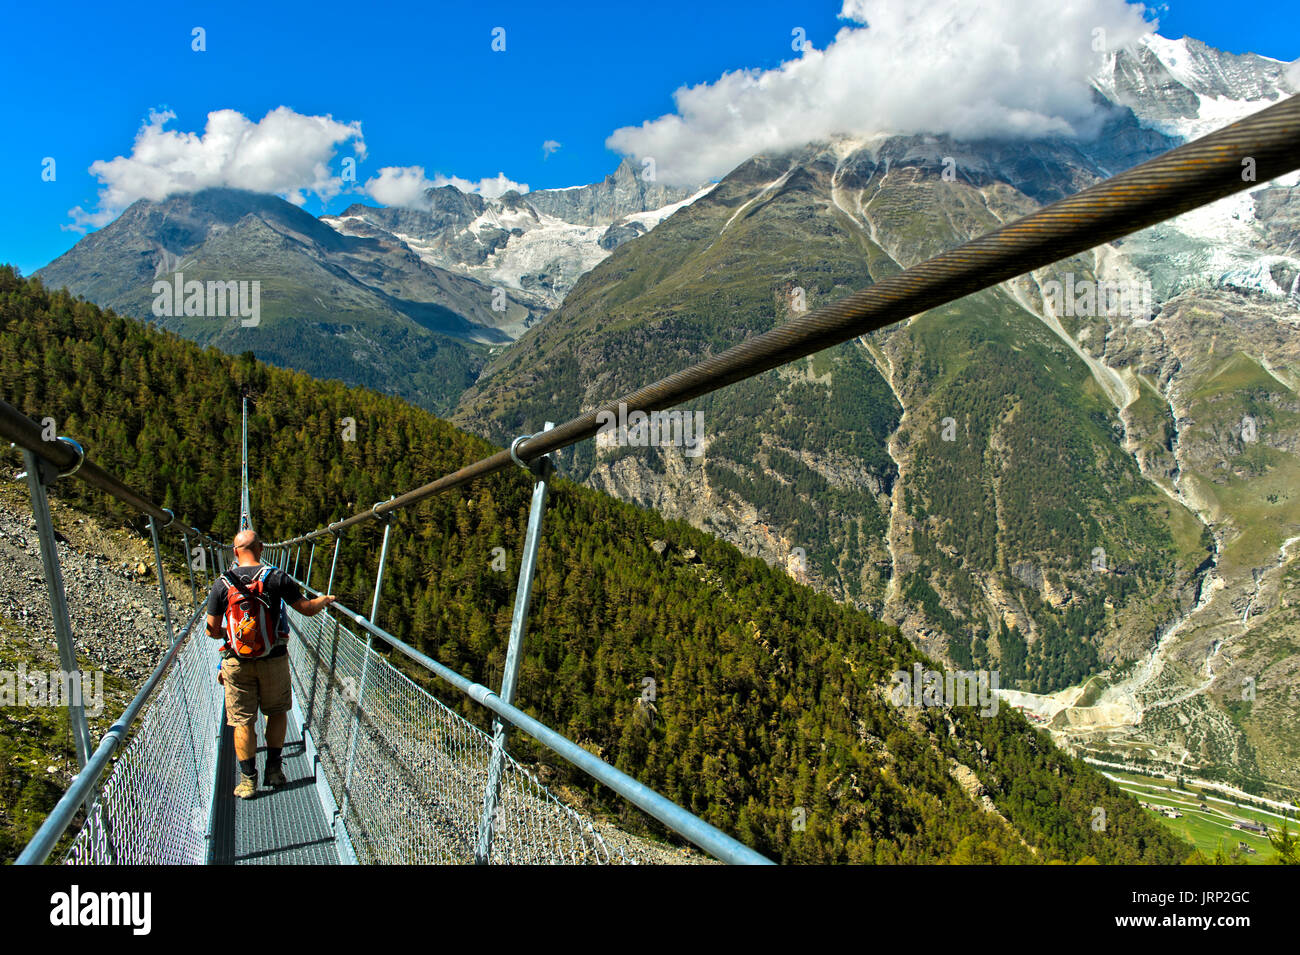 Charles Kuonen Hängebrücke, längste Fußgänger-Hängebrücke der Welt, Randa,  Valais, Schweizer Alpen, Schweiz Stockfotografie - Alamy